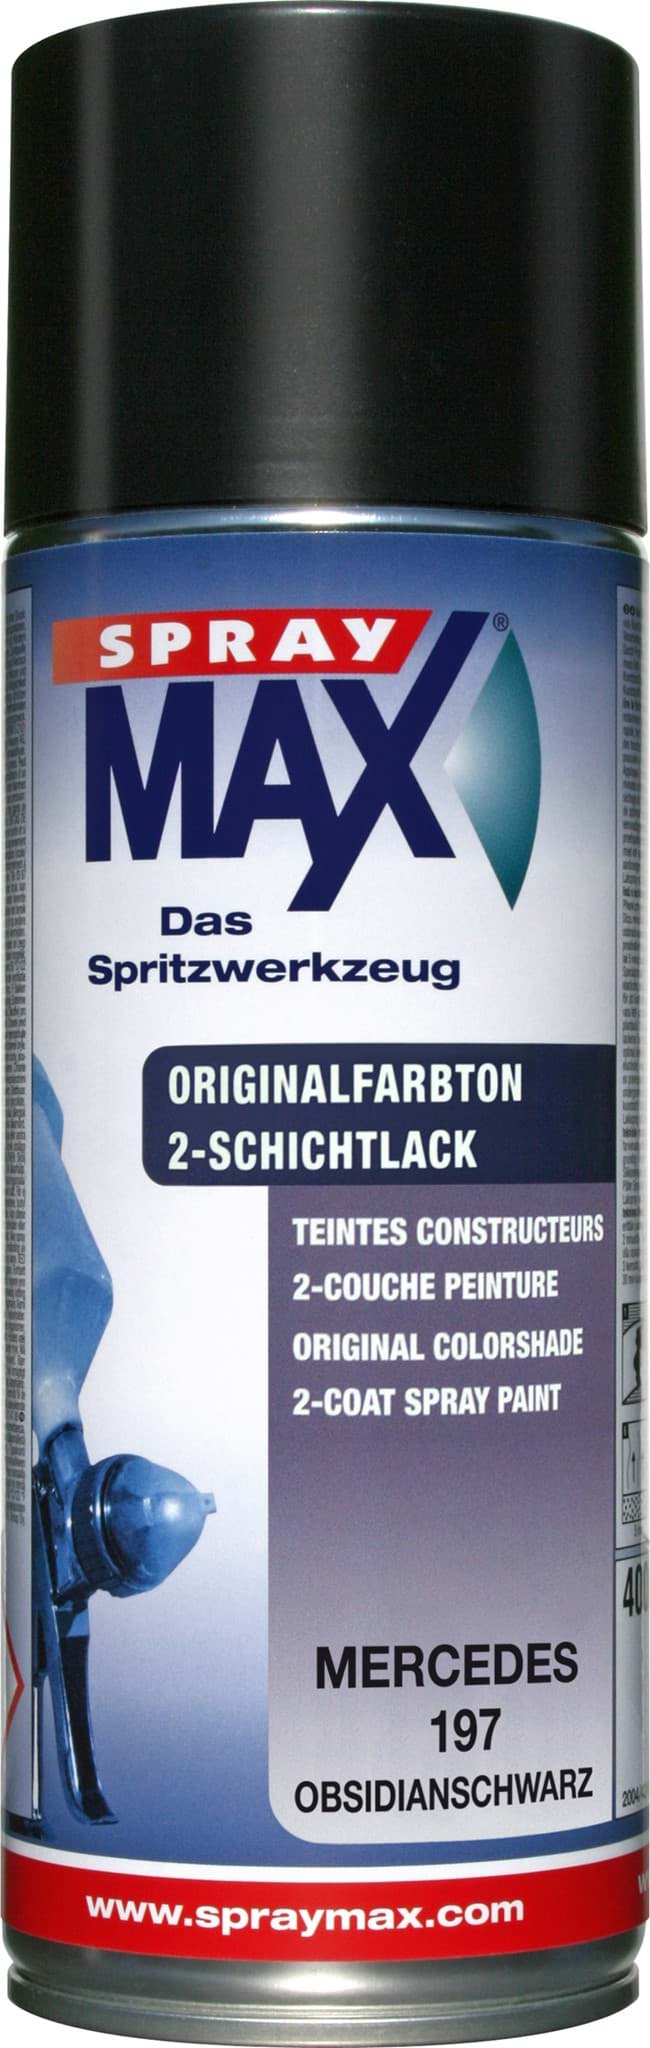 Picture of SprayMax Originalfarbton für Mercedes 197 obsidianschwarz